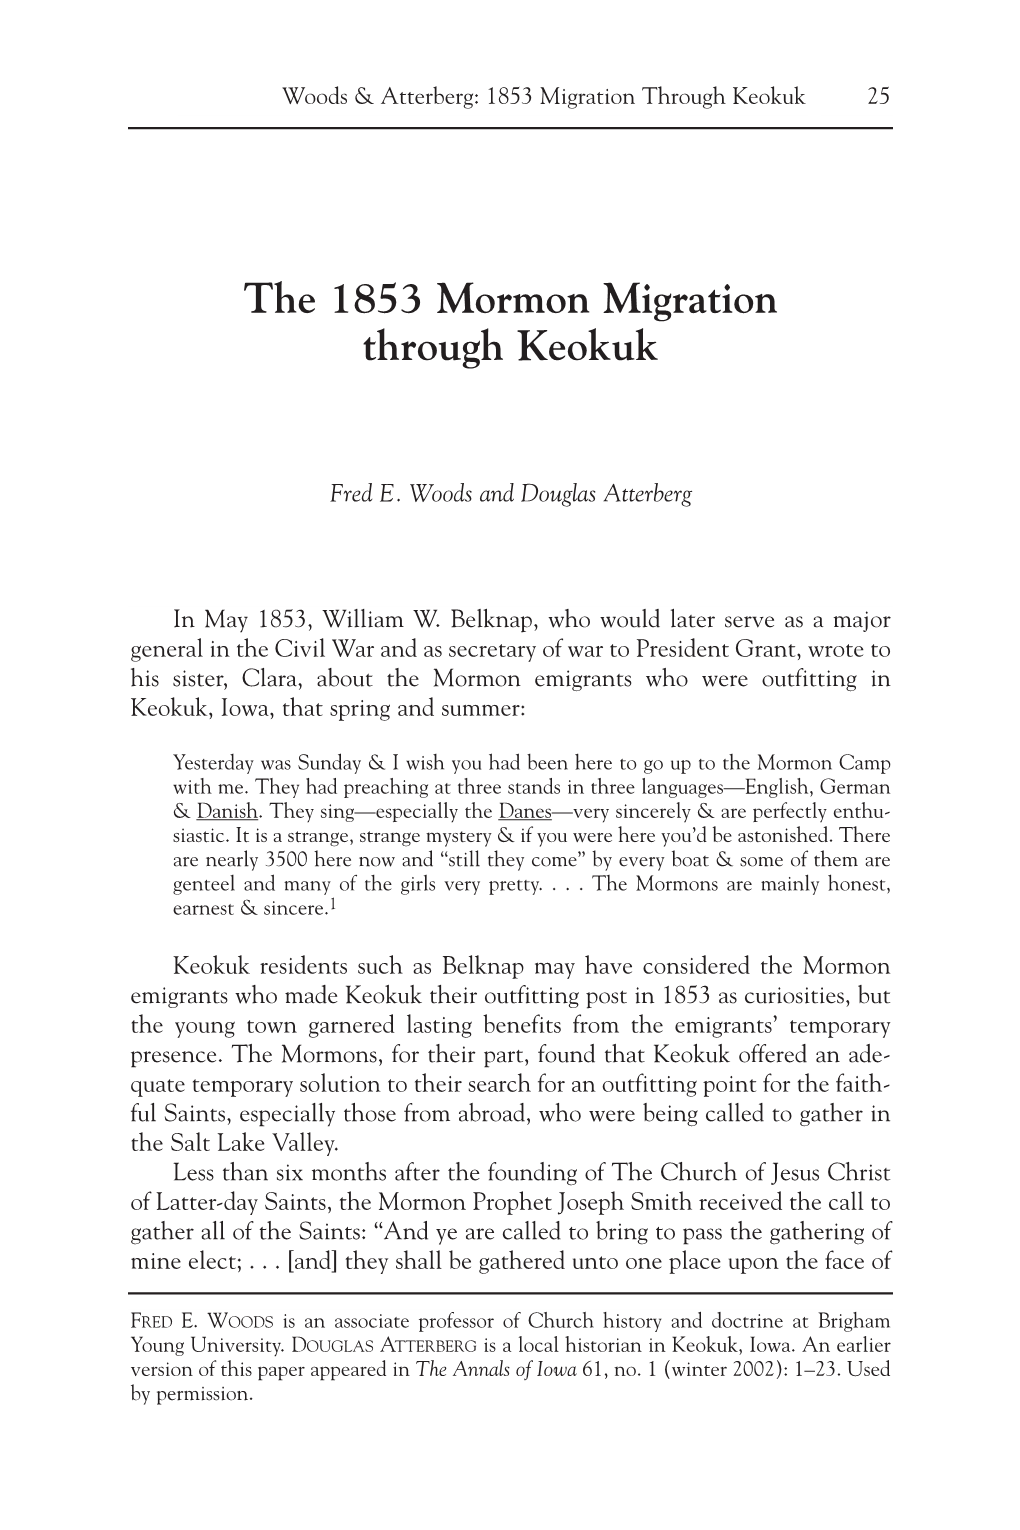 The 1853 Mormon Migration Through Keokuk